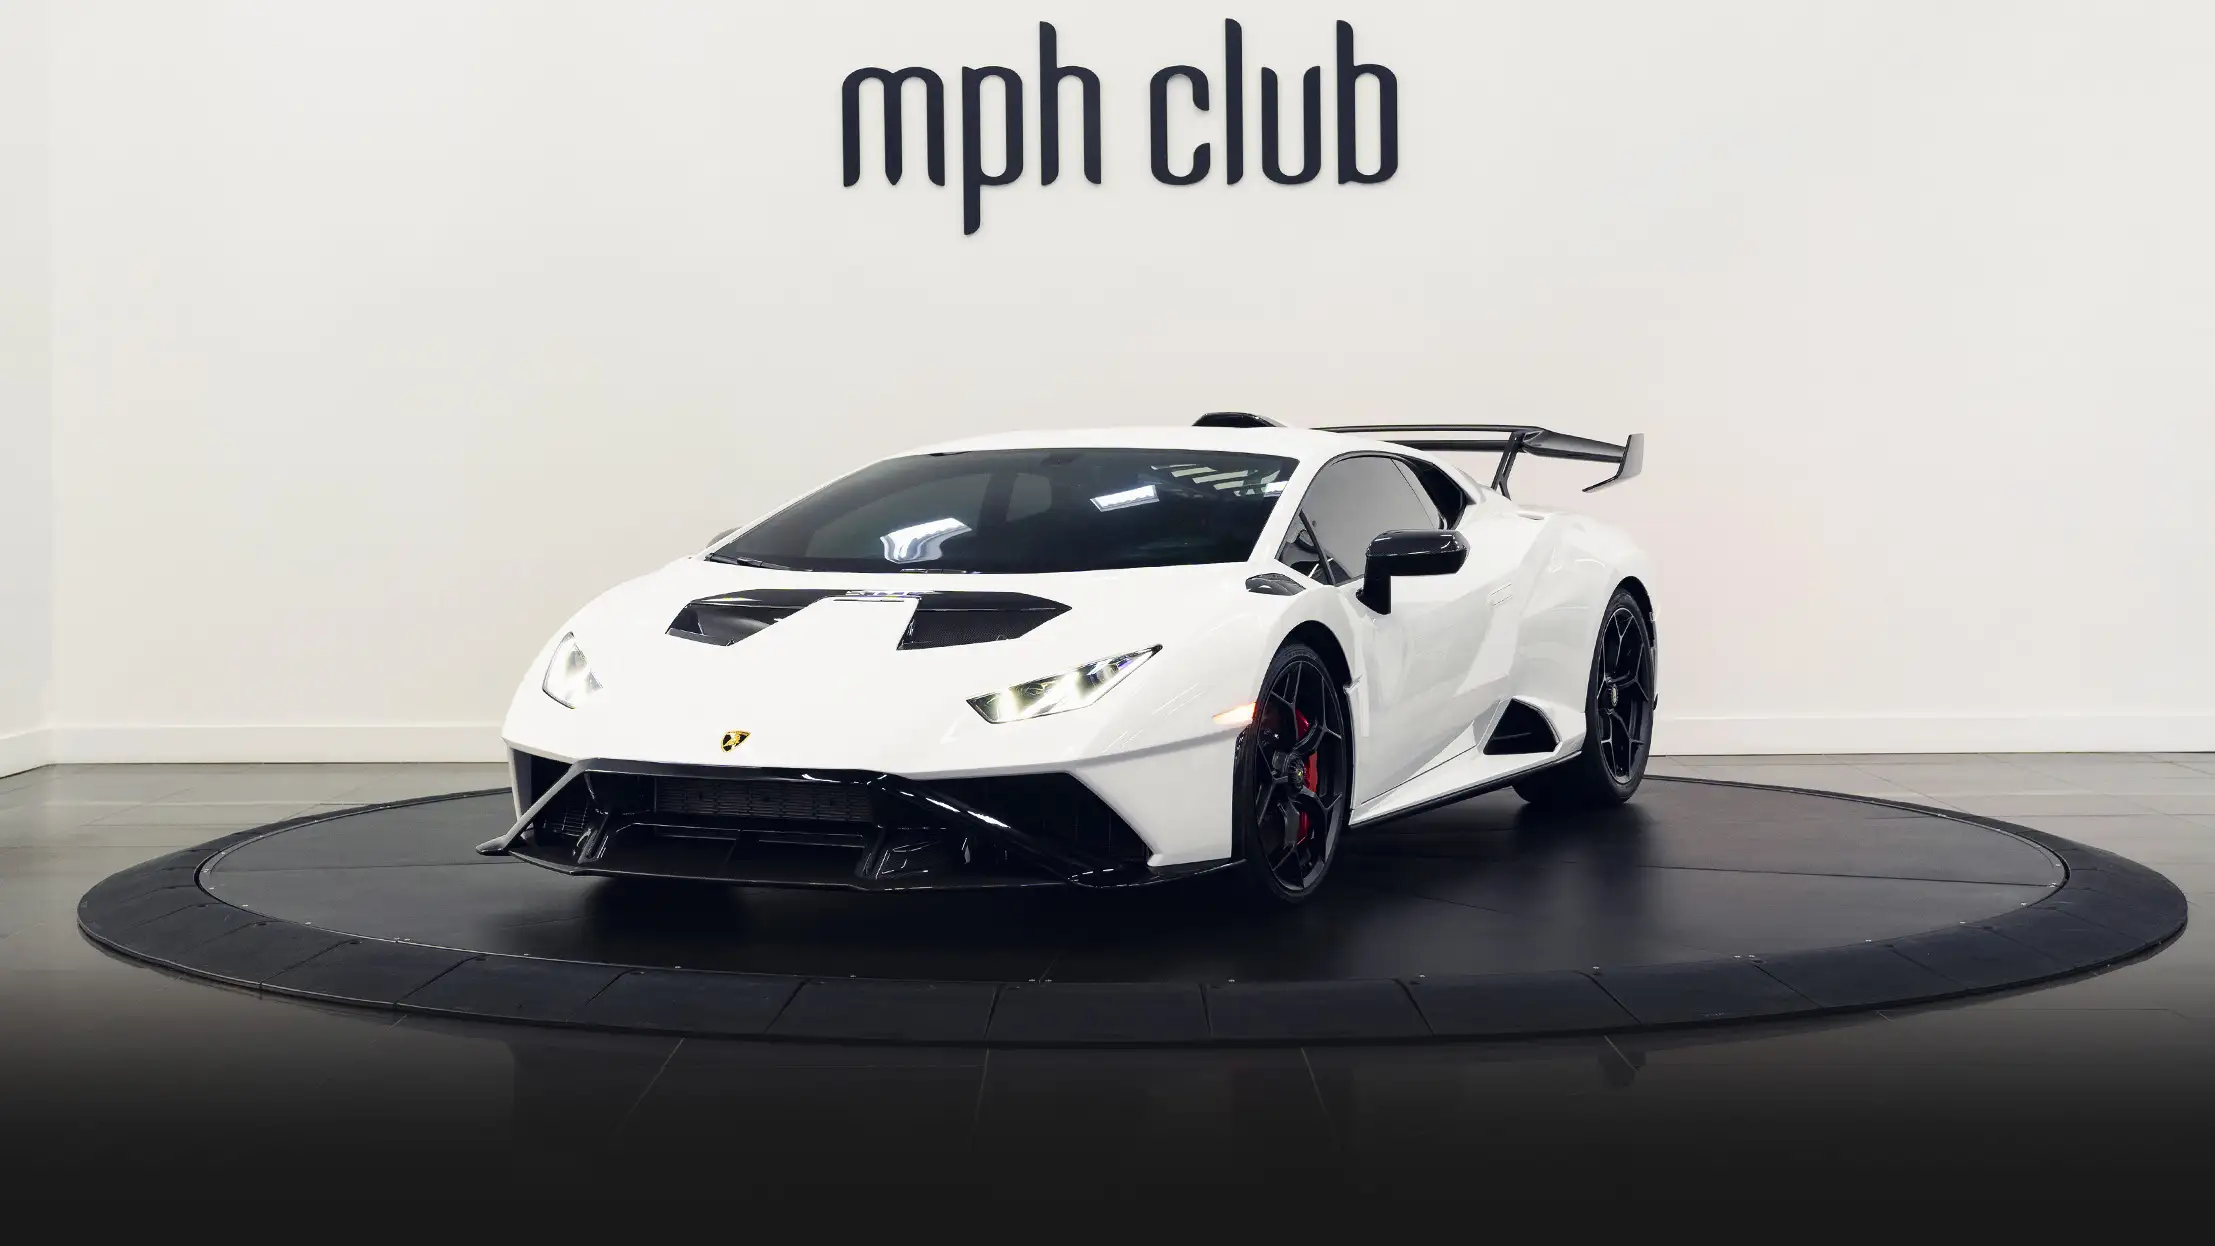 Lamborghini Huracan STO rental Miami profile view mph club